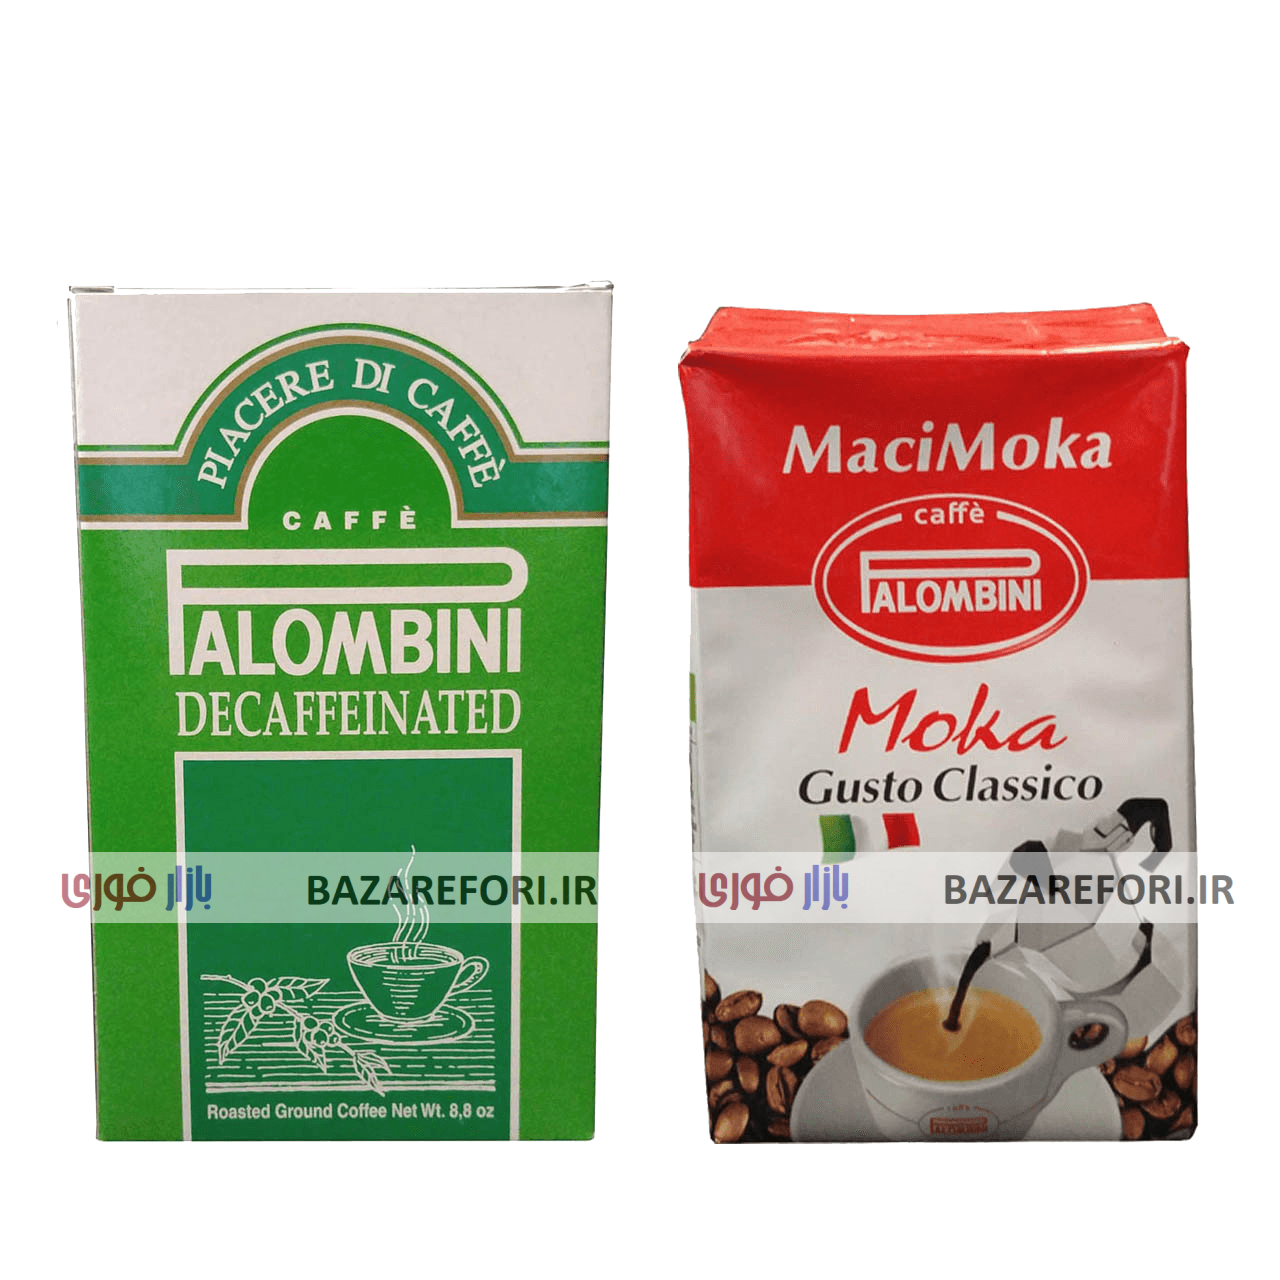 پودر قهوه پالومبینی مدل MaciMoka به همراه پودر قهوه پالومبینی مدل DeCaffeinato